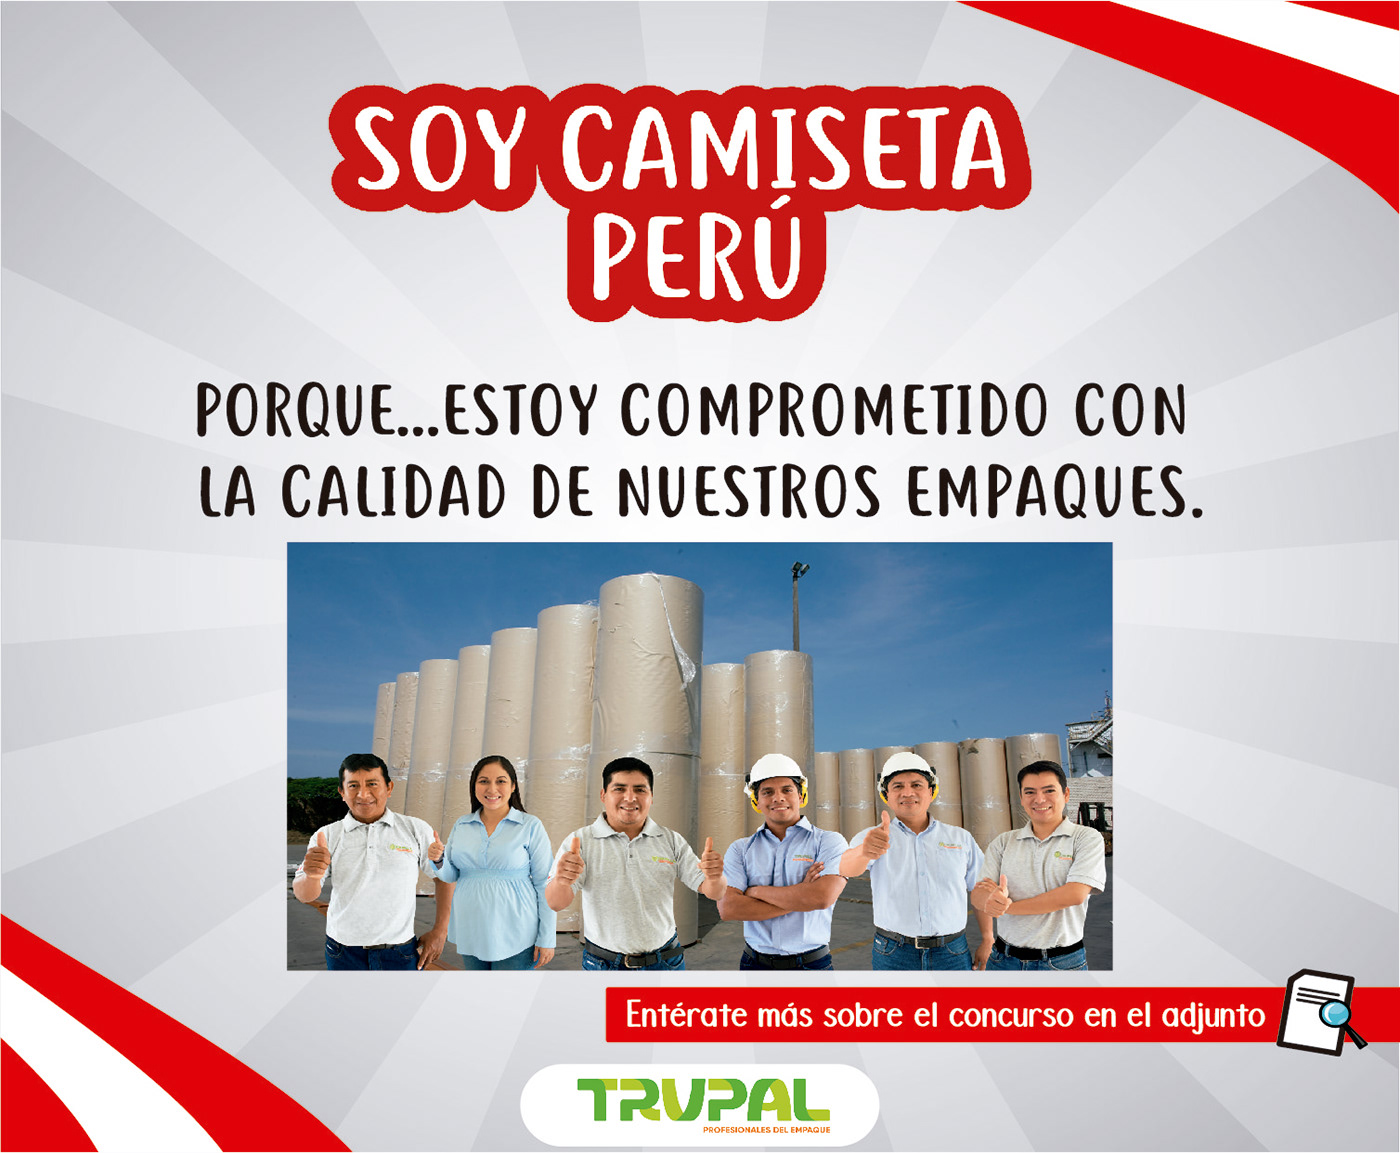 Campaña Fiestas patrias peru peruano